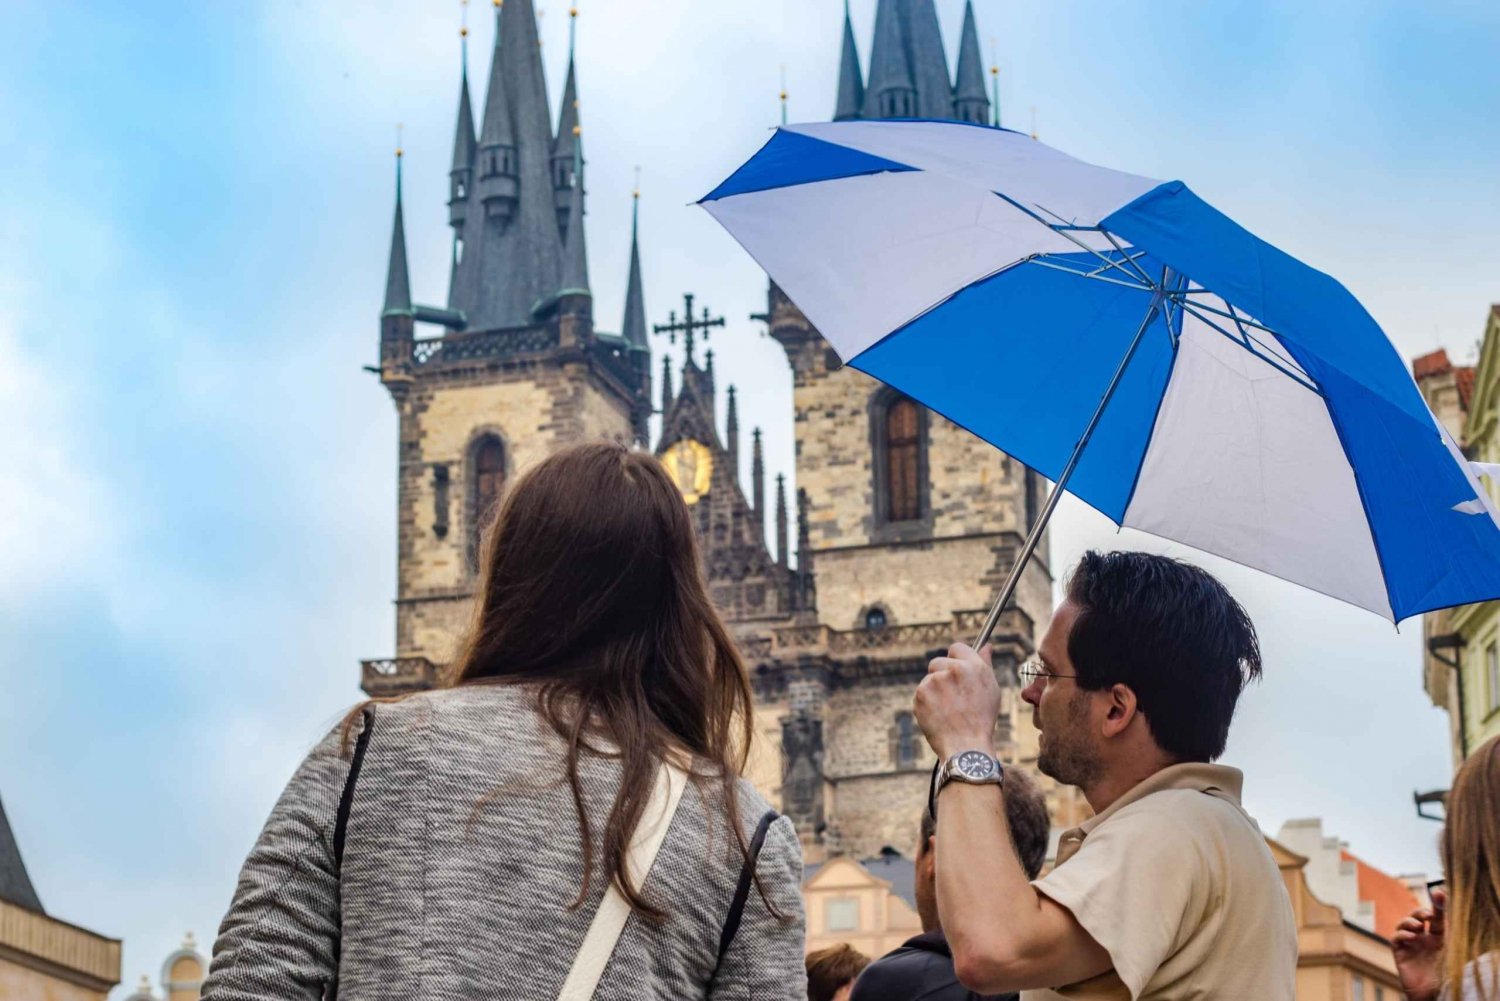 Praha: Prahan linna: 3 tunnin kävelykierros vanhassakaupungissa ja Prahan linnassa